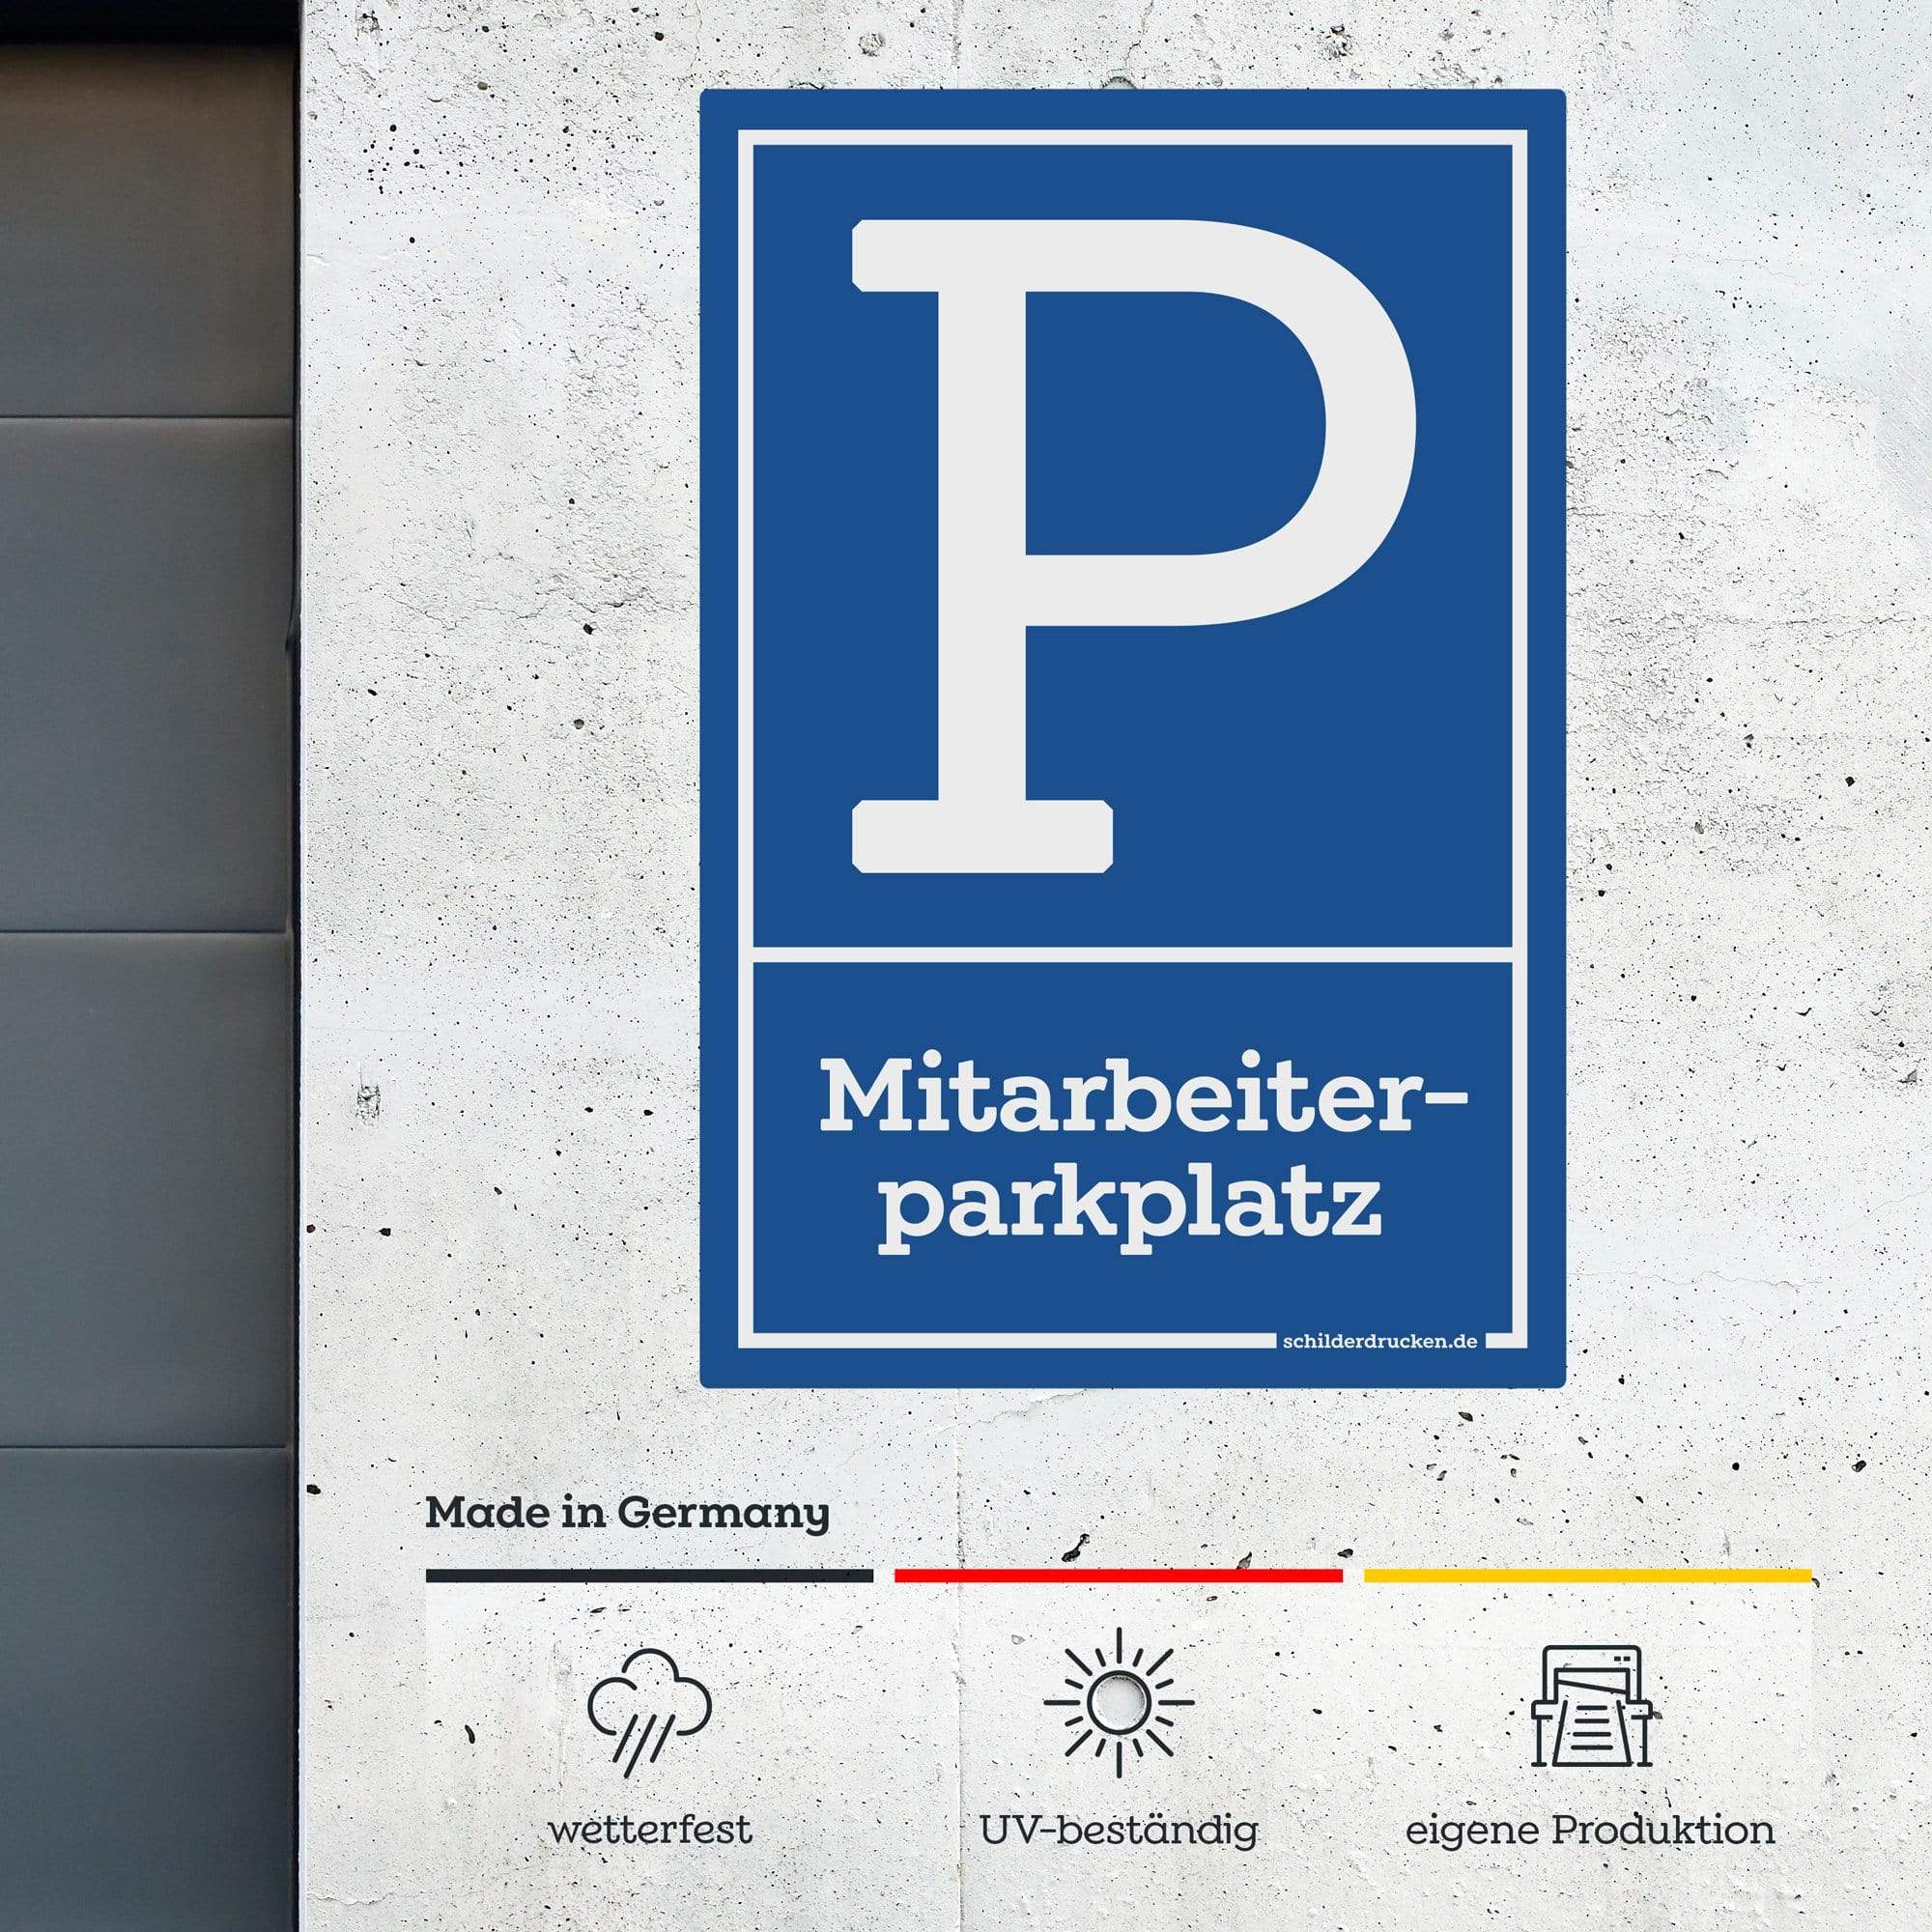 Mitarbeiterparkplatz 10 x 15 cm / weiss / Alu-Dibond online drucken lassen bei schilderdrucken.de